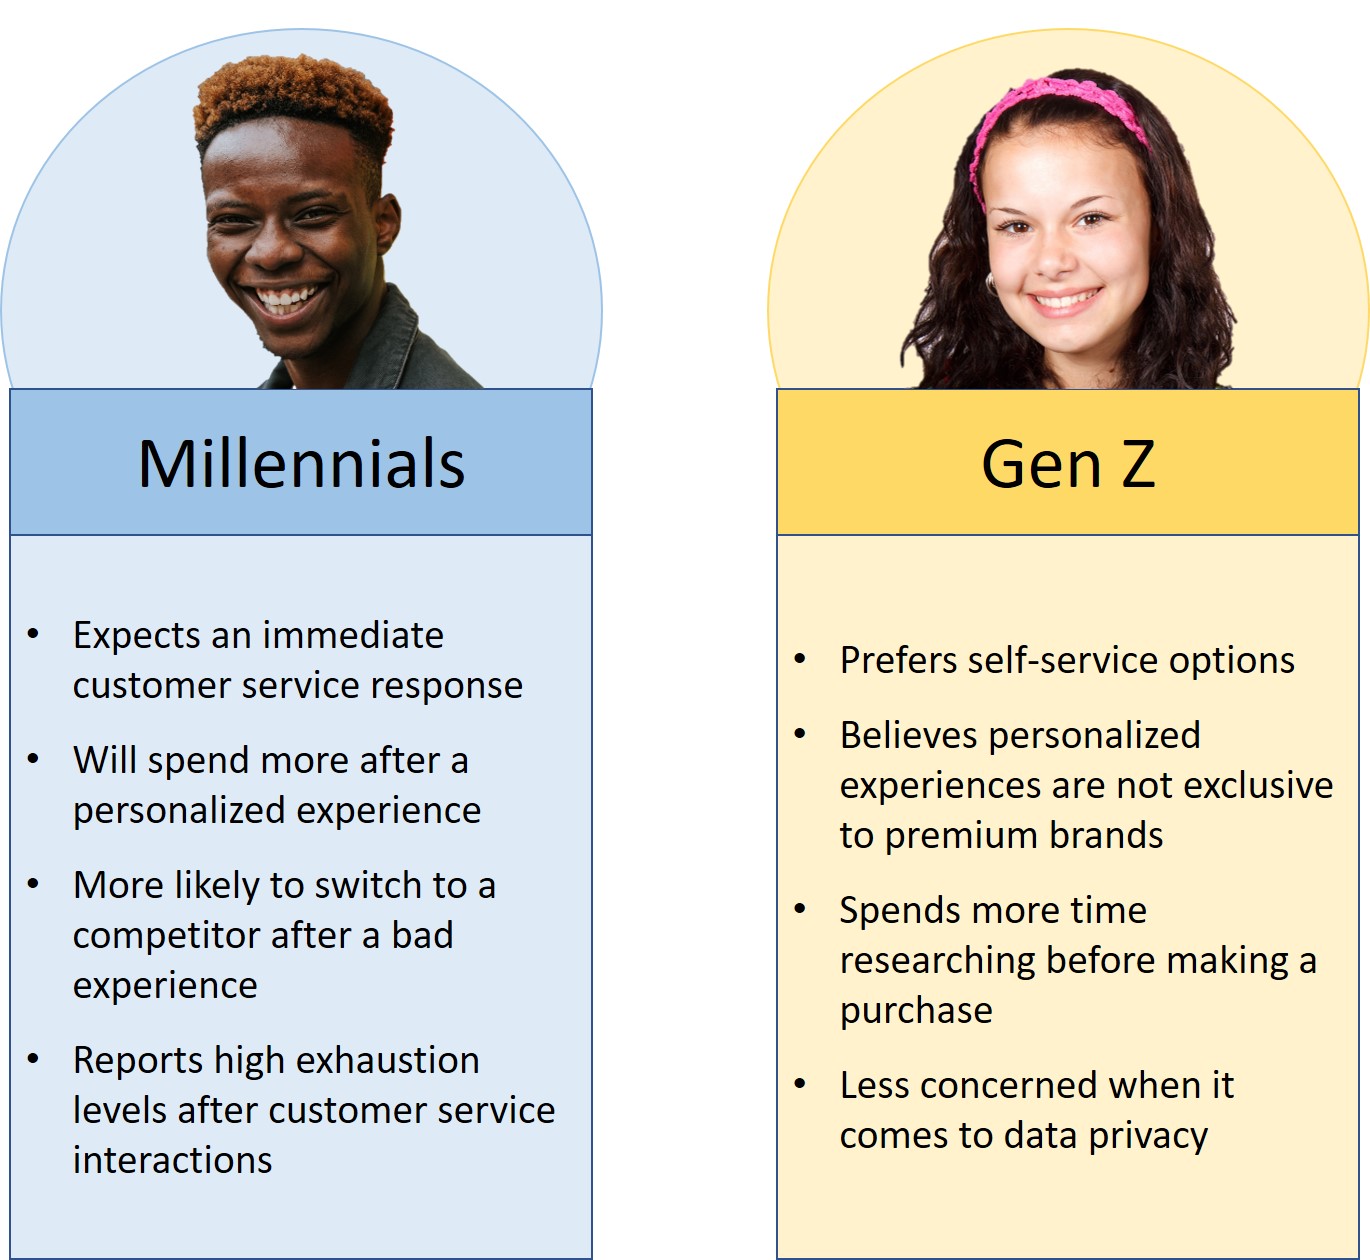 Comparison of Millennials to Gen Z